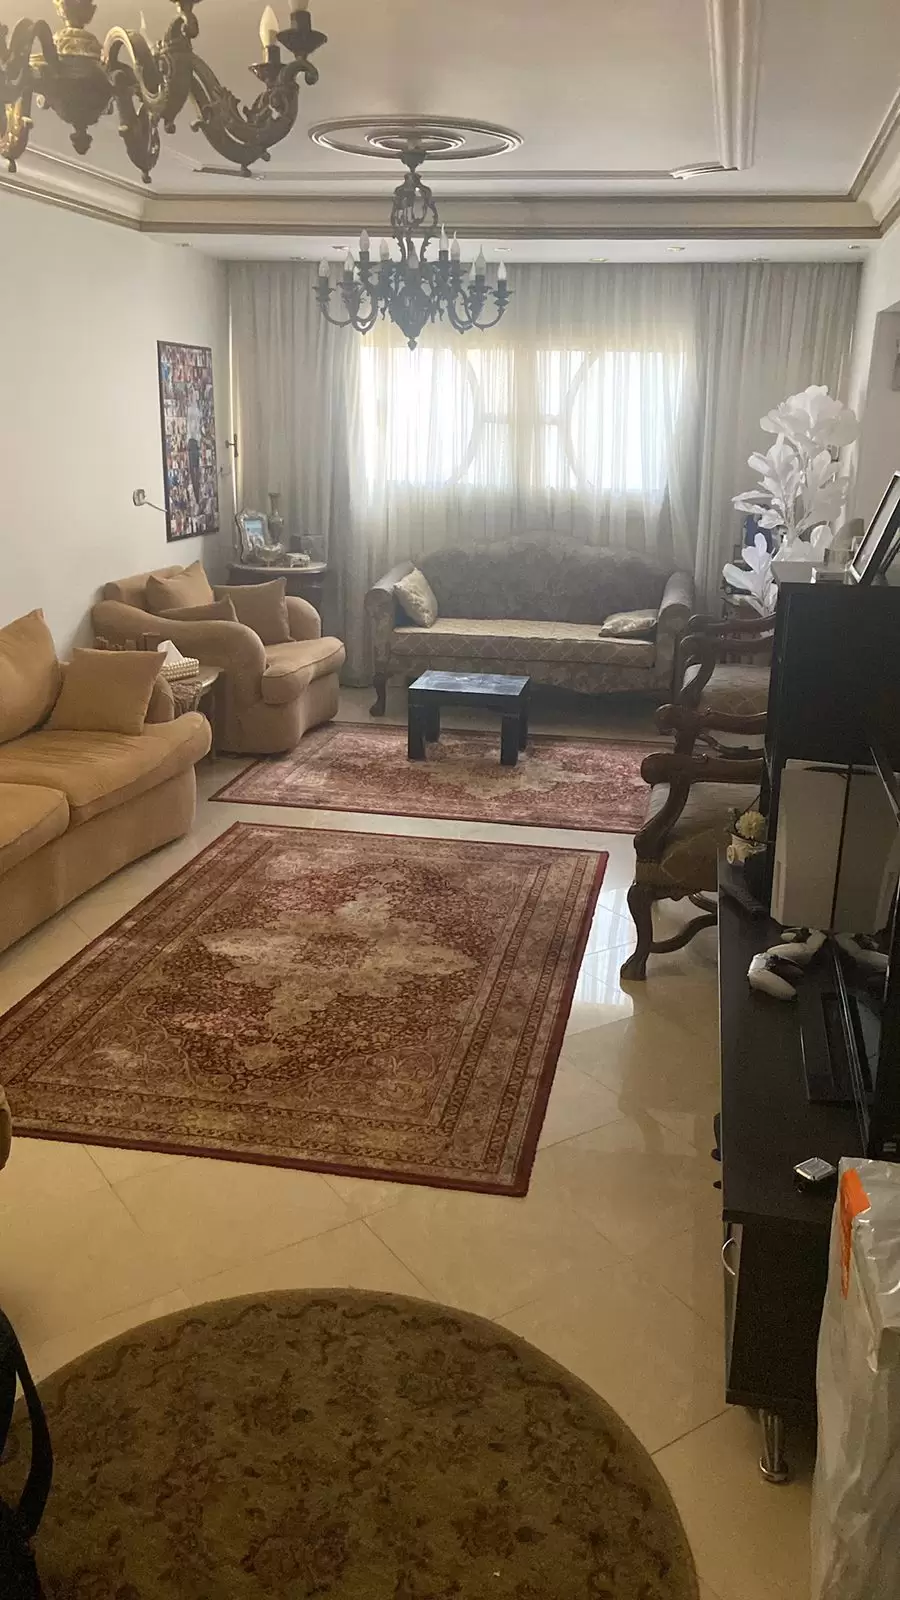 للبيع شقة بإطلالة مميزة على شارع طة حسين الرئيسى  مساحتها 150 متر للبيع